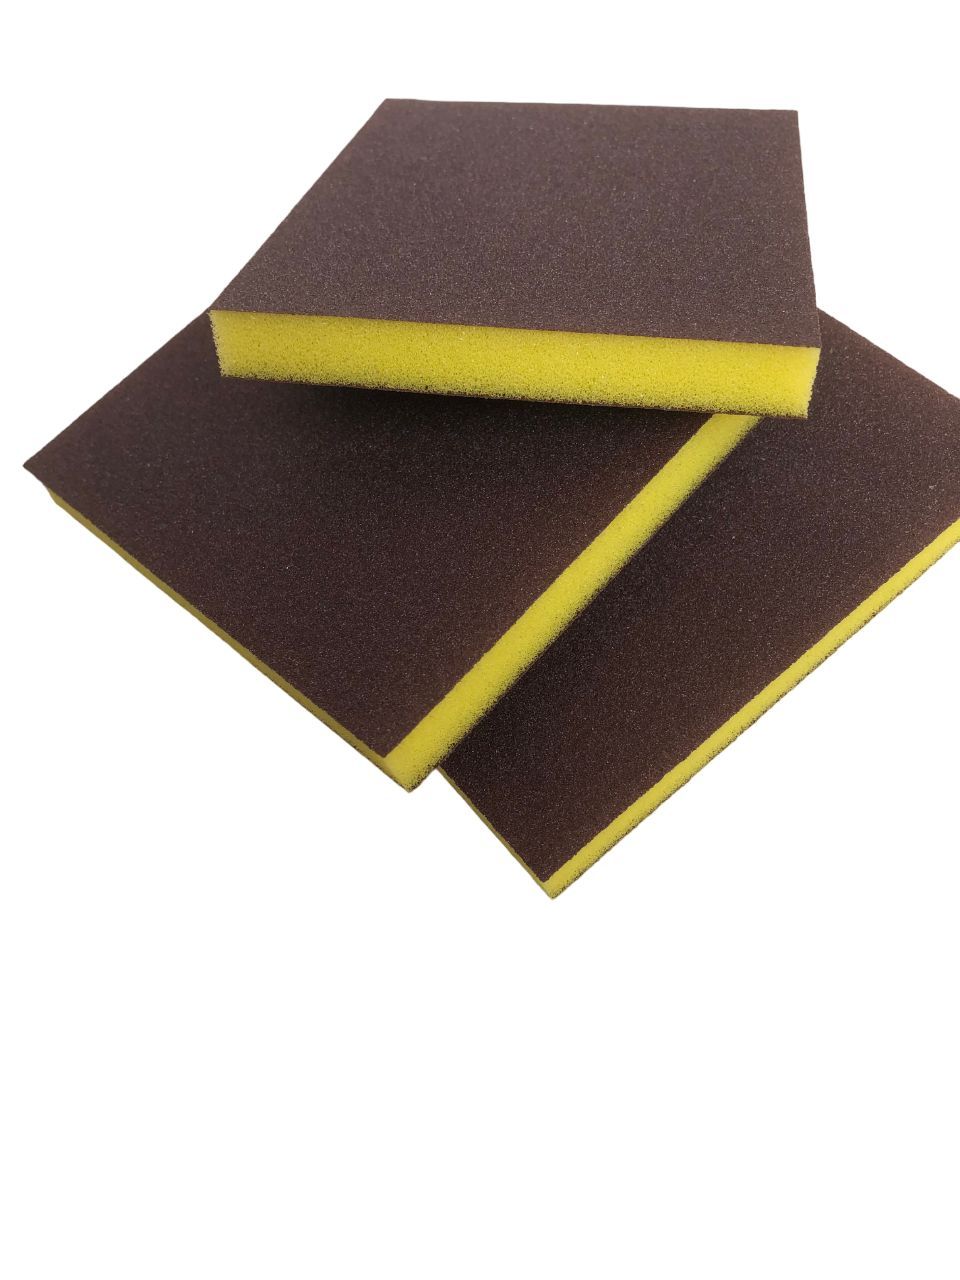 Губка двусторонняя Sponge Fine 98*120*13mm 3шт желтая(Р240) доска двусторонняя малая в наборе магниты с алфавитом маркер на водной основе мелки губка